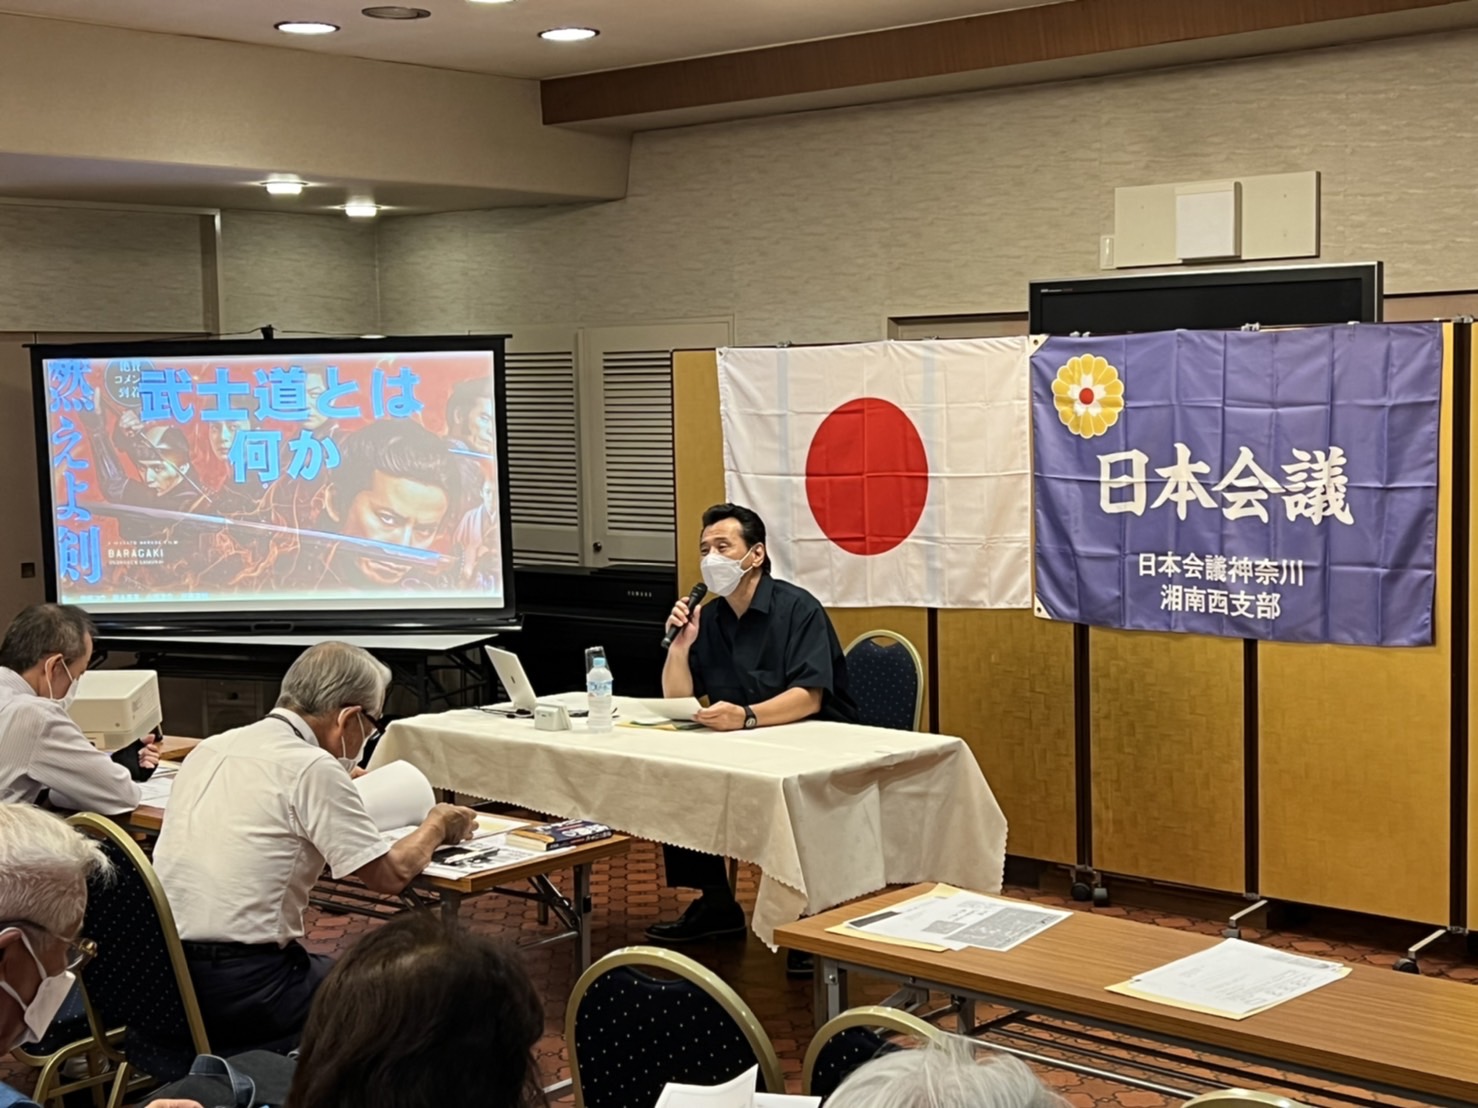 「日本の歴史を学ぶ勉強会」第8回勉強会「武士道とは道徳　さくらさくら〜日本人の心〜」を開催しました